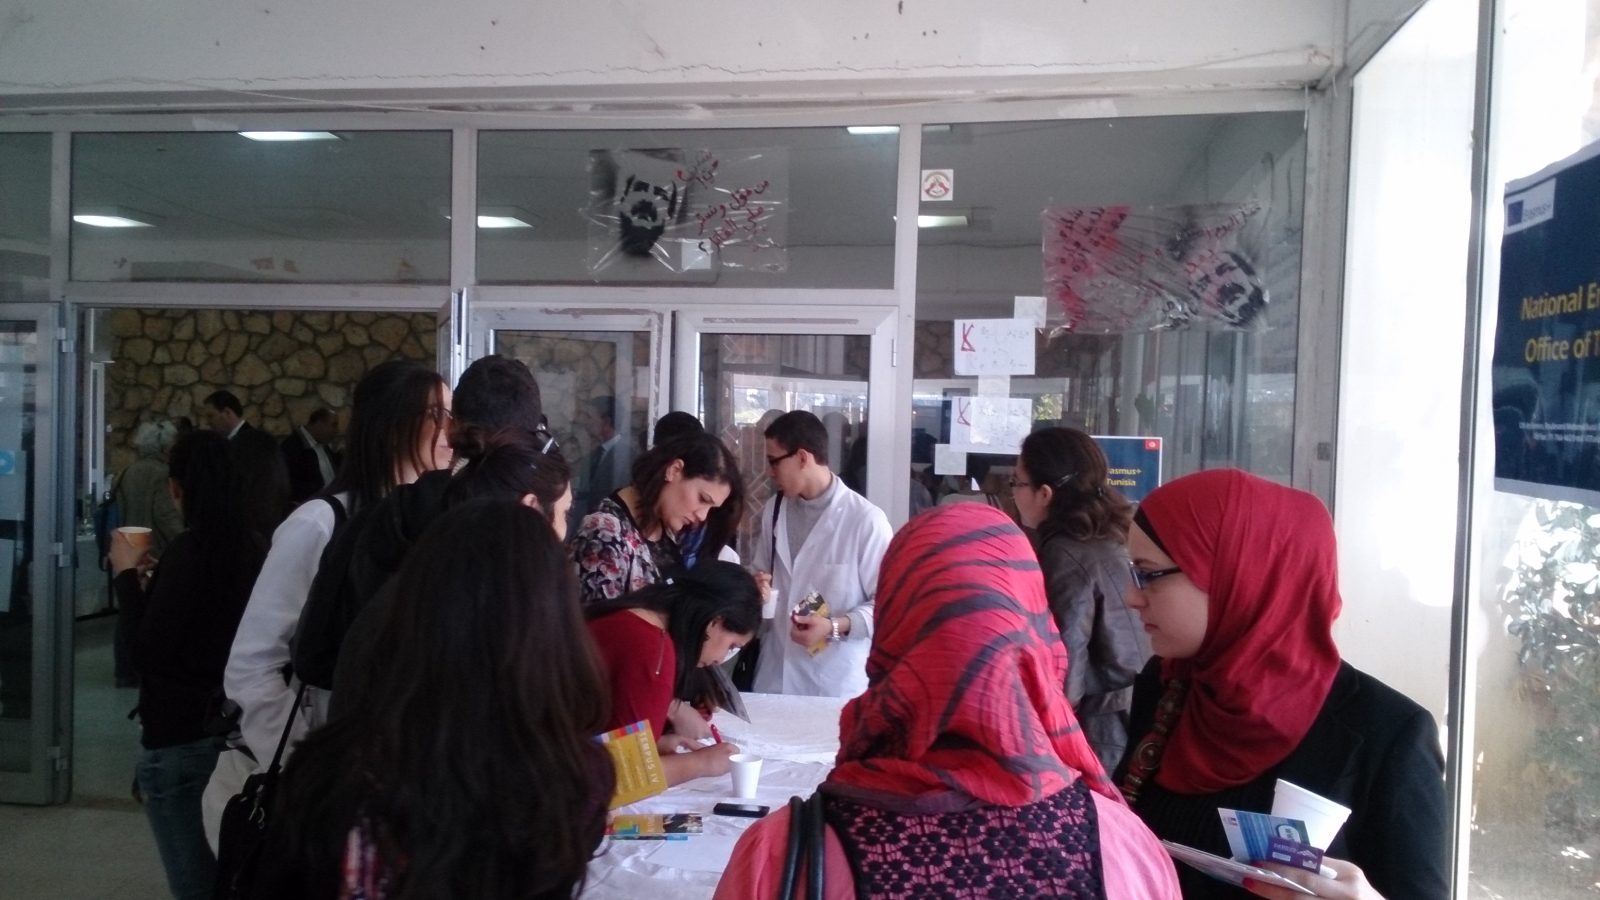 Apprendre de nouvelles choses, découvrir une nouvelle culture et faire des rencontres enrichissantes… C’est ce que plusieurs jeunes tunisiens ont eu la chance de vivre en passant un semestre ou une année dans une université européenne dans le cadre du programme d'échange Erasmus+